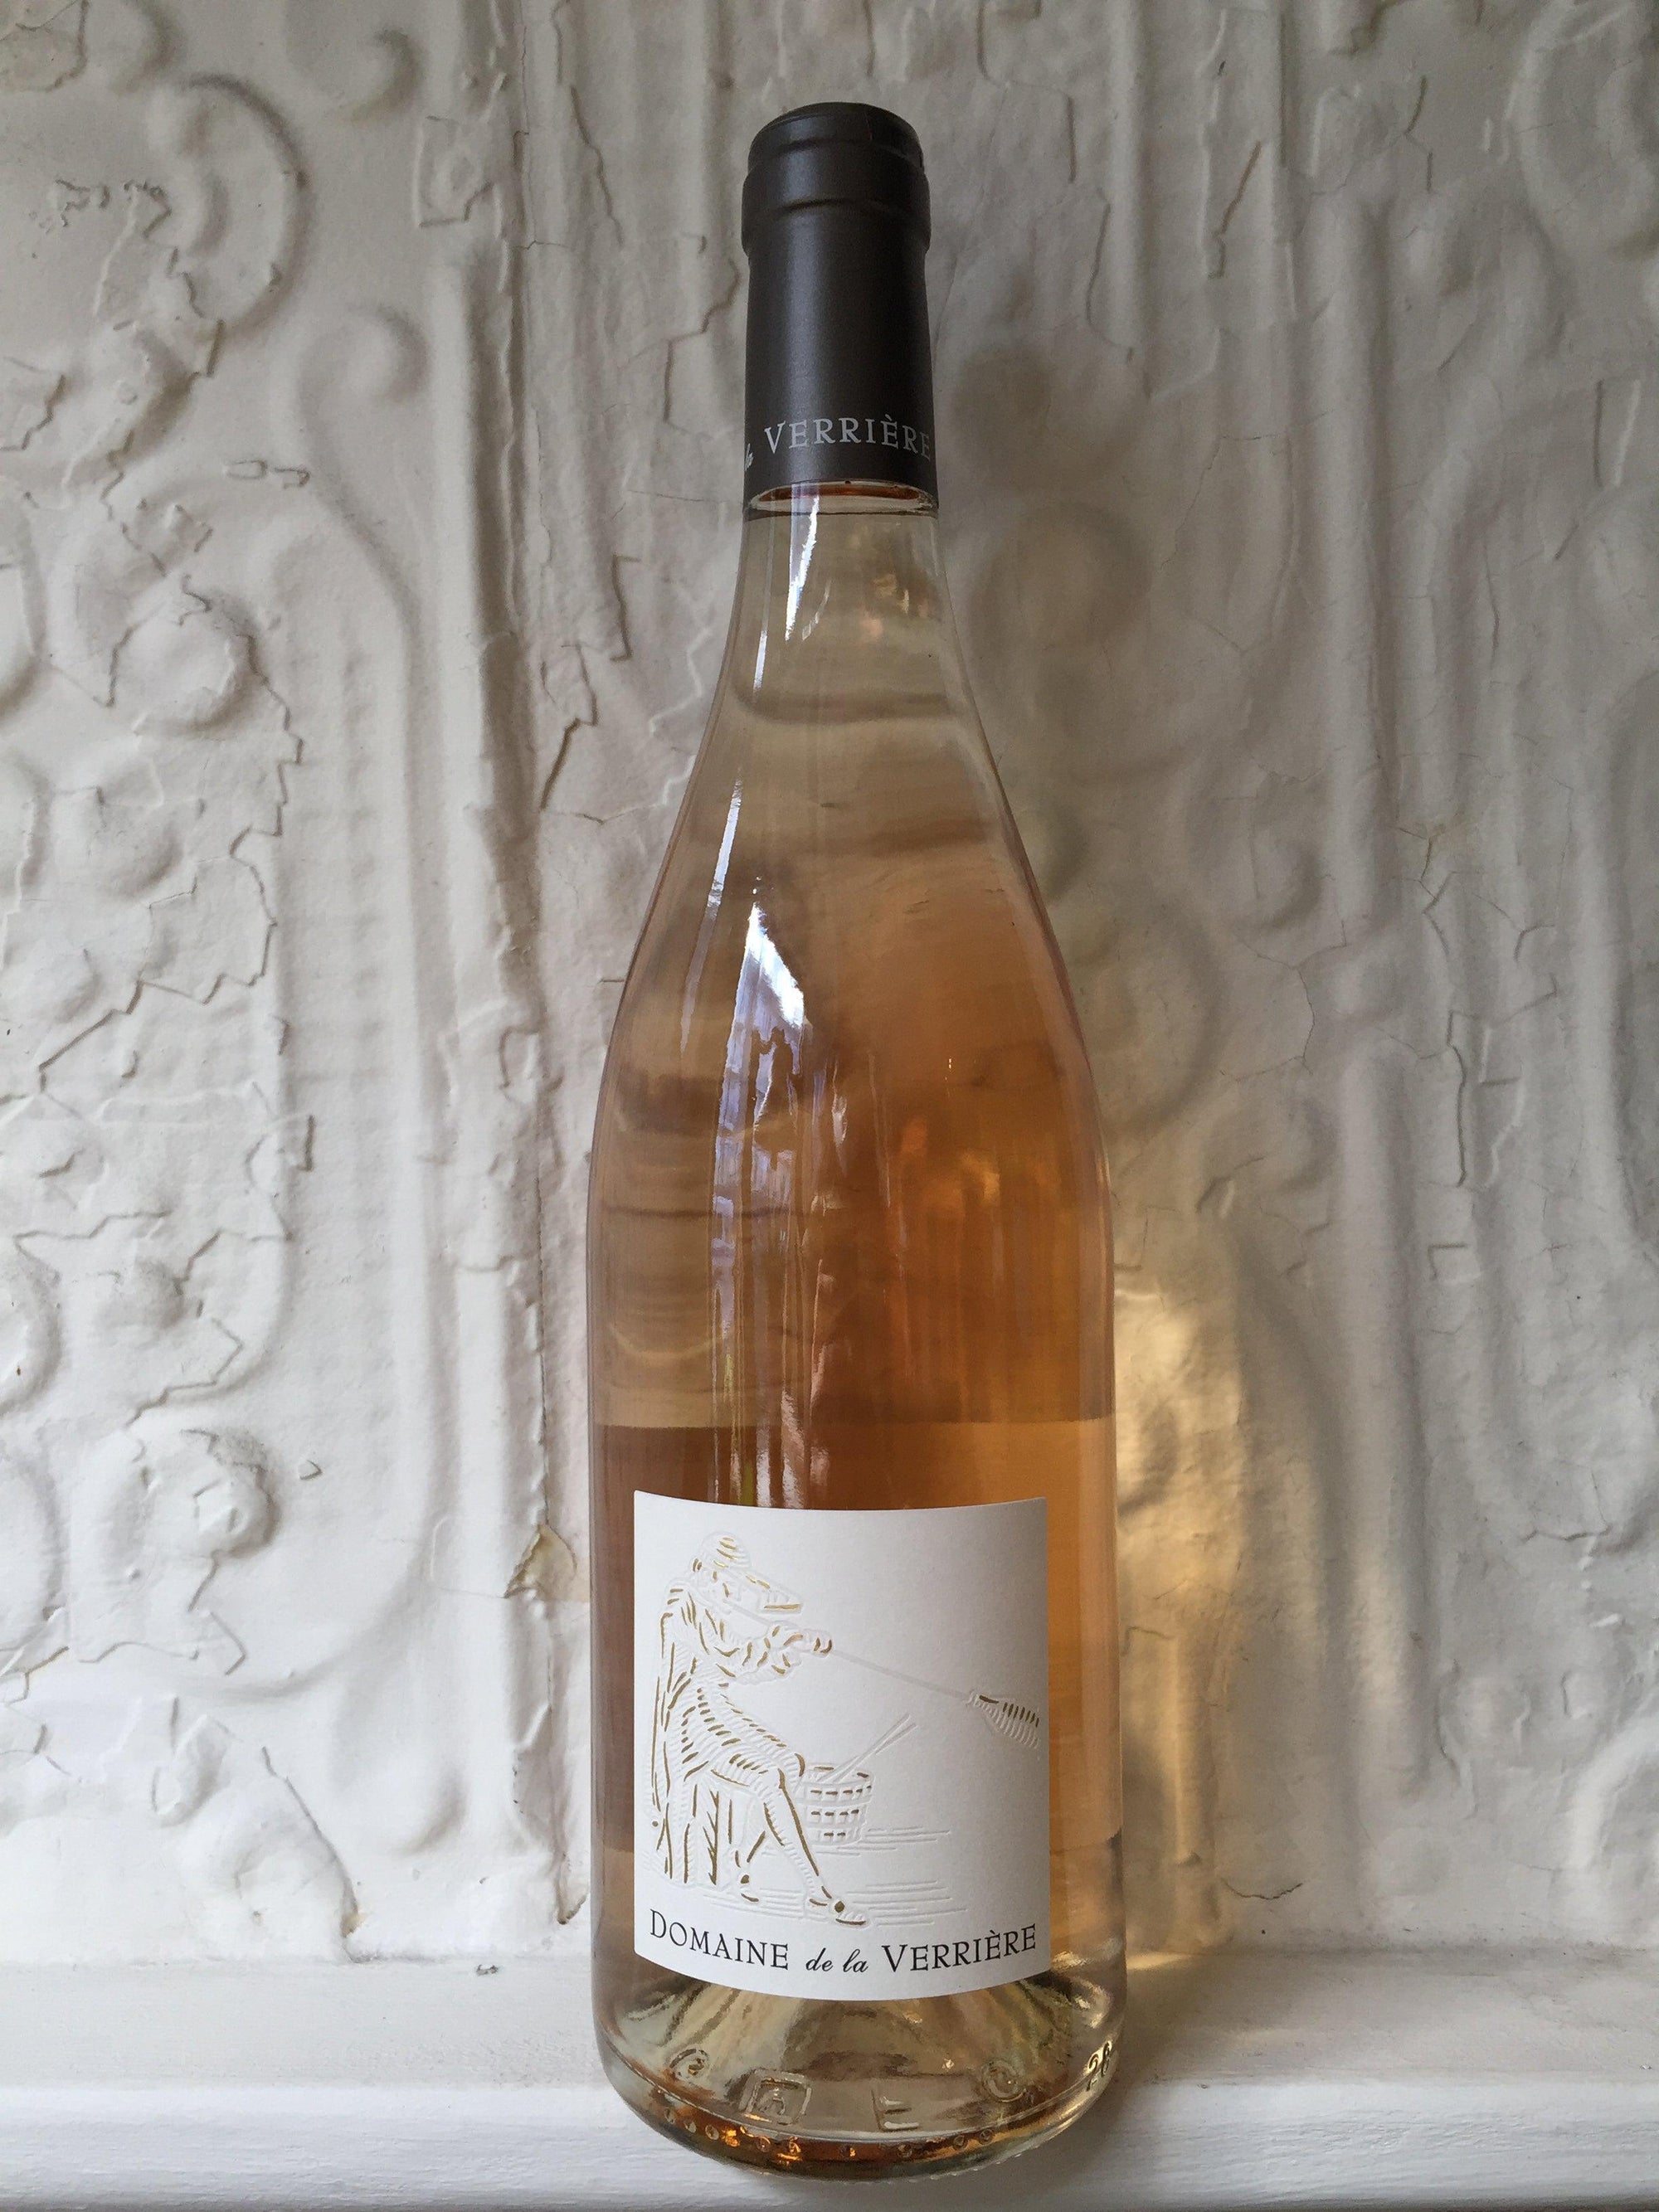 Ventoux Rosé, Domaine de la Verriere 2020 (Rhone Valley, France)-Wine-Bibber & Bell